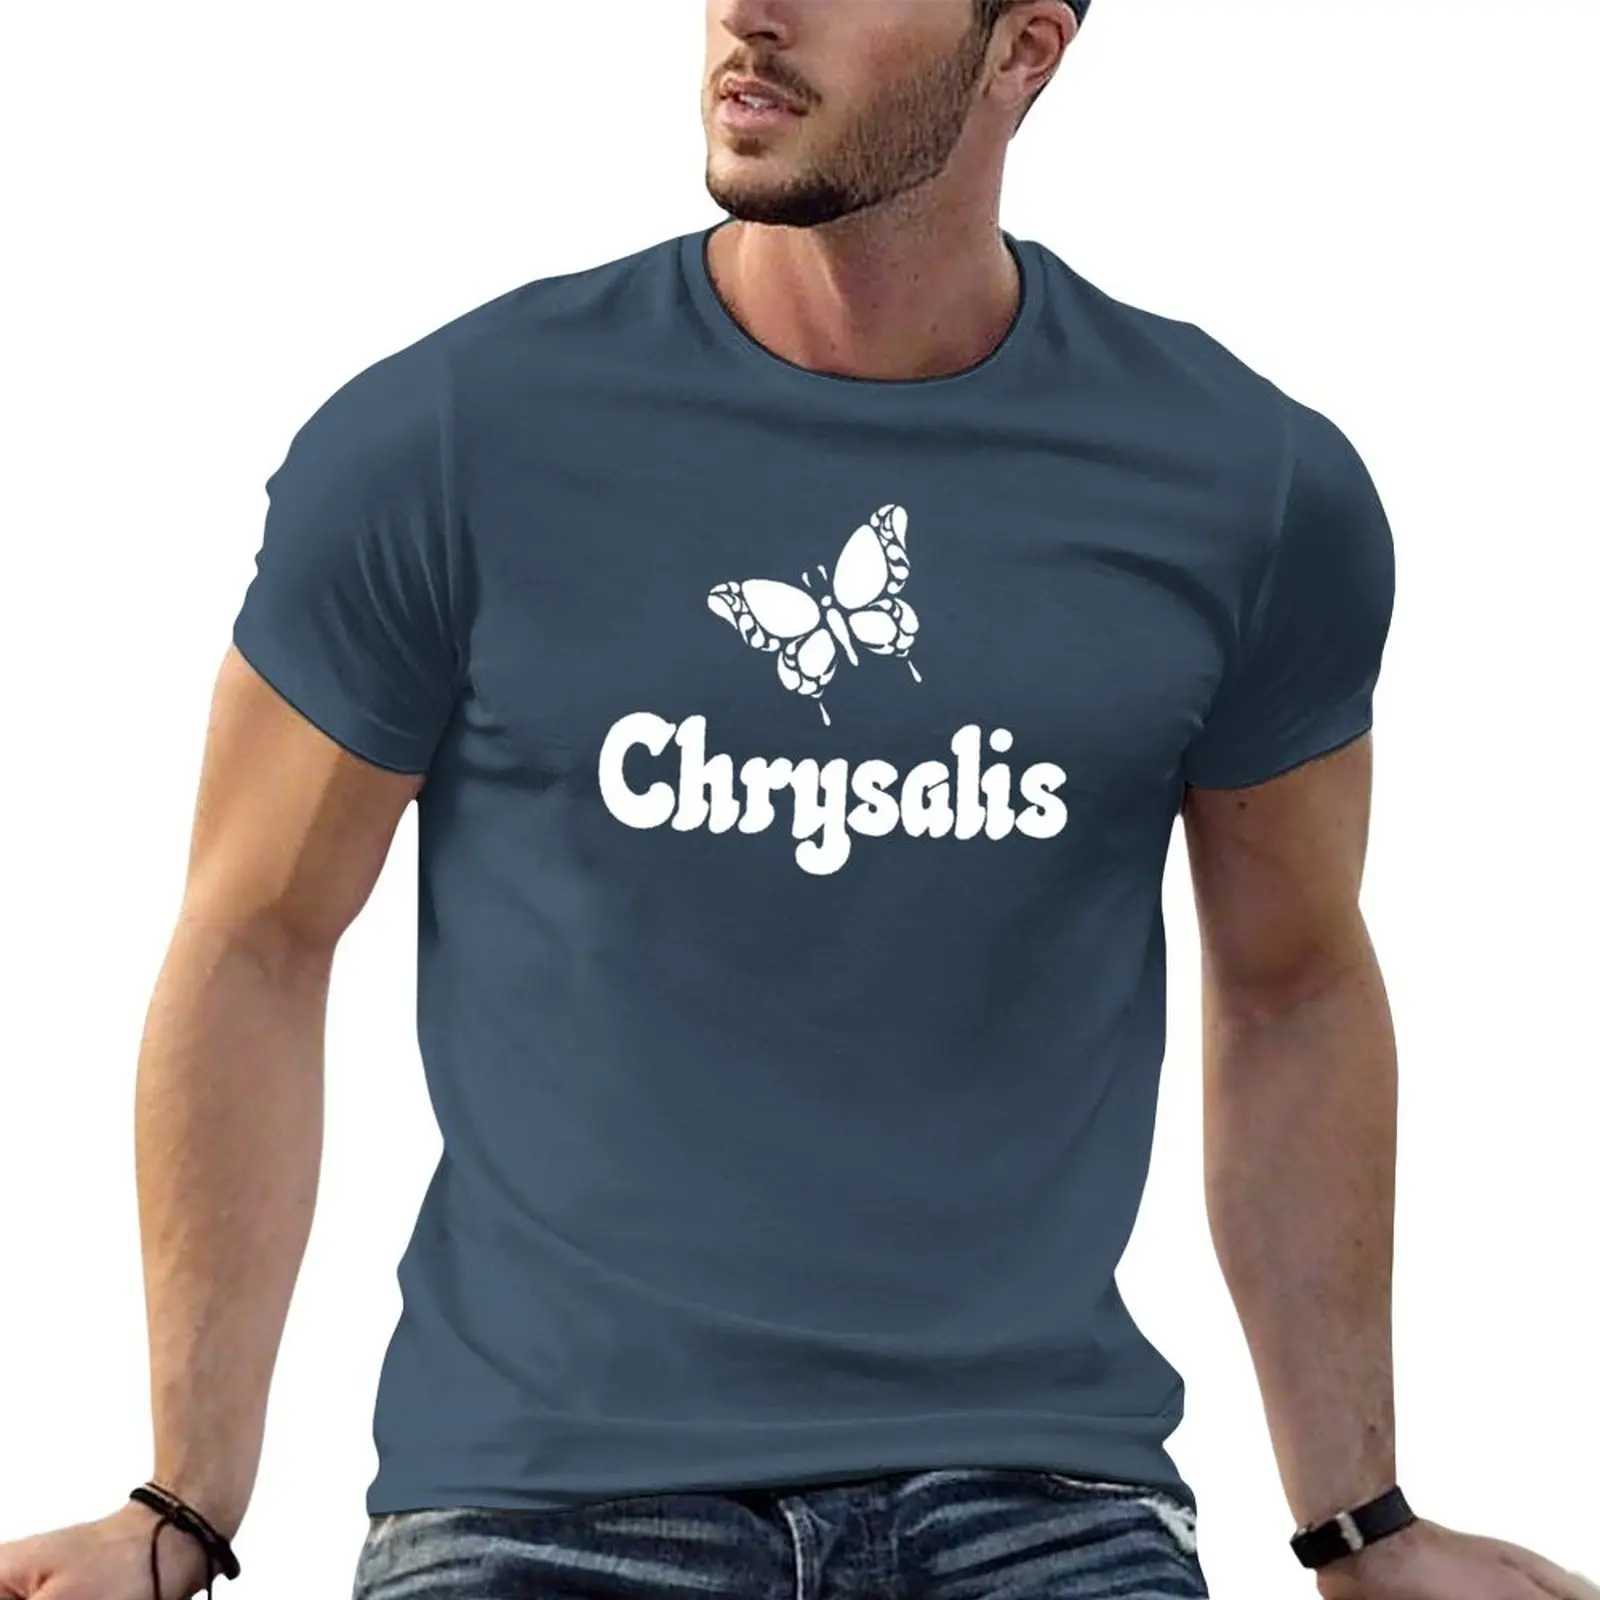 

Новая футболка с изображением хризалиса, Забавные футболки с коротким рукавом, кавайная одежда, футболки, приталенные футболки для мужчин